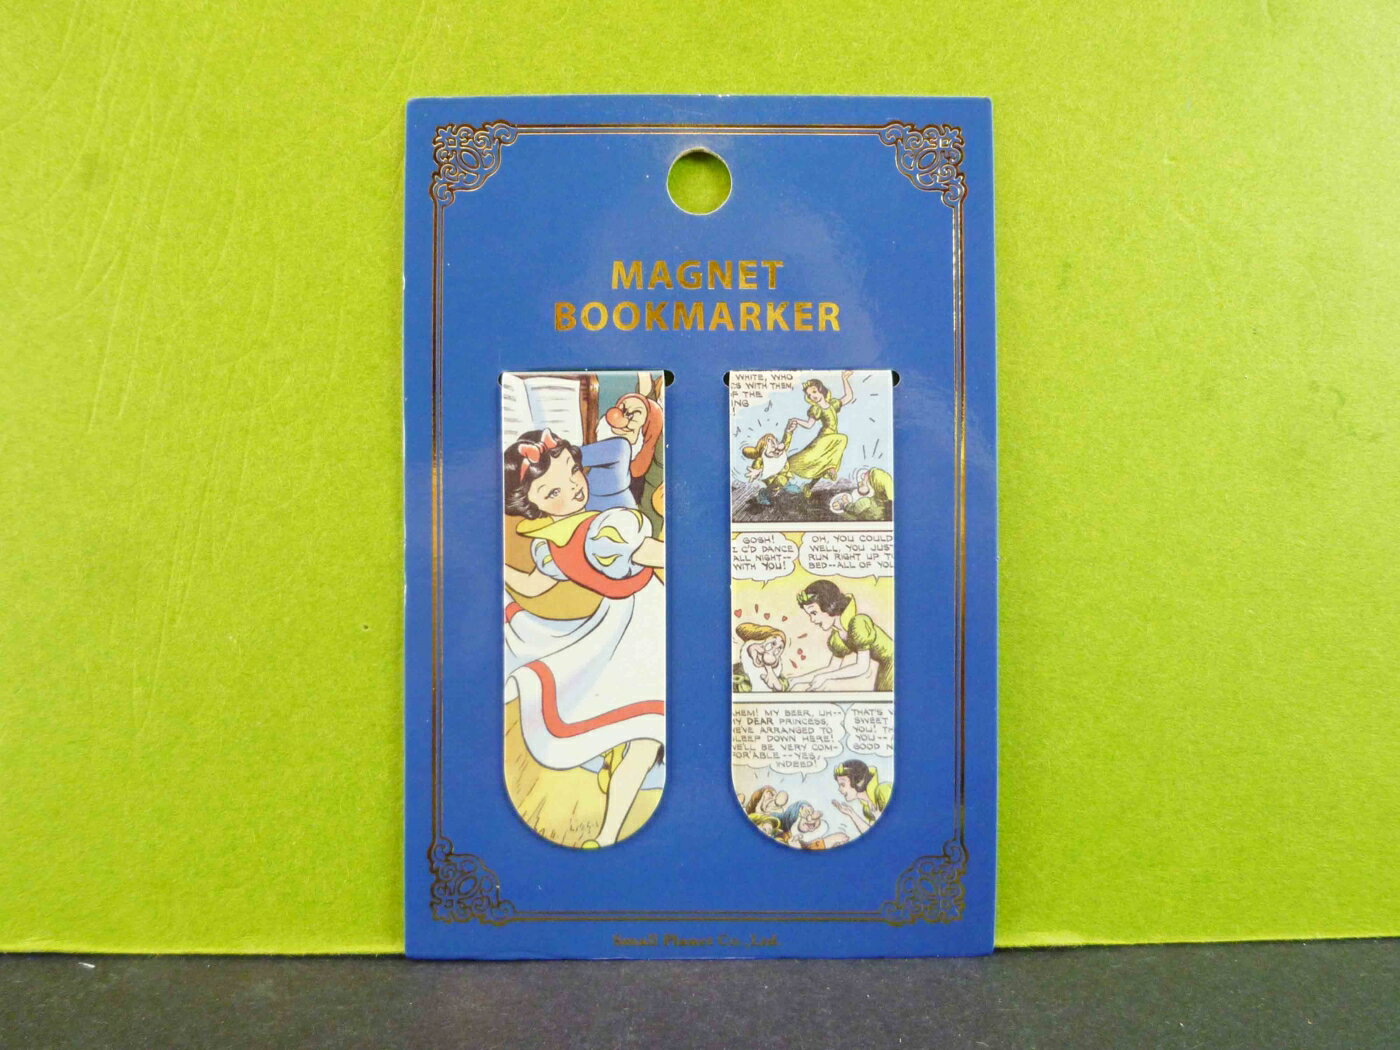 【震撼精品百貨】公主 系列Princess 磁鐵夾-2入-白雪公主圖案 震撼日式精品百貨